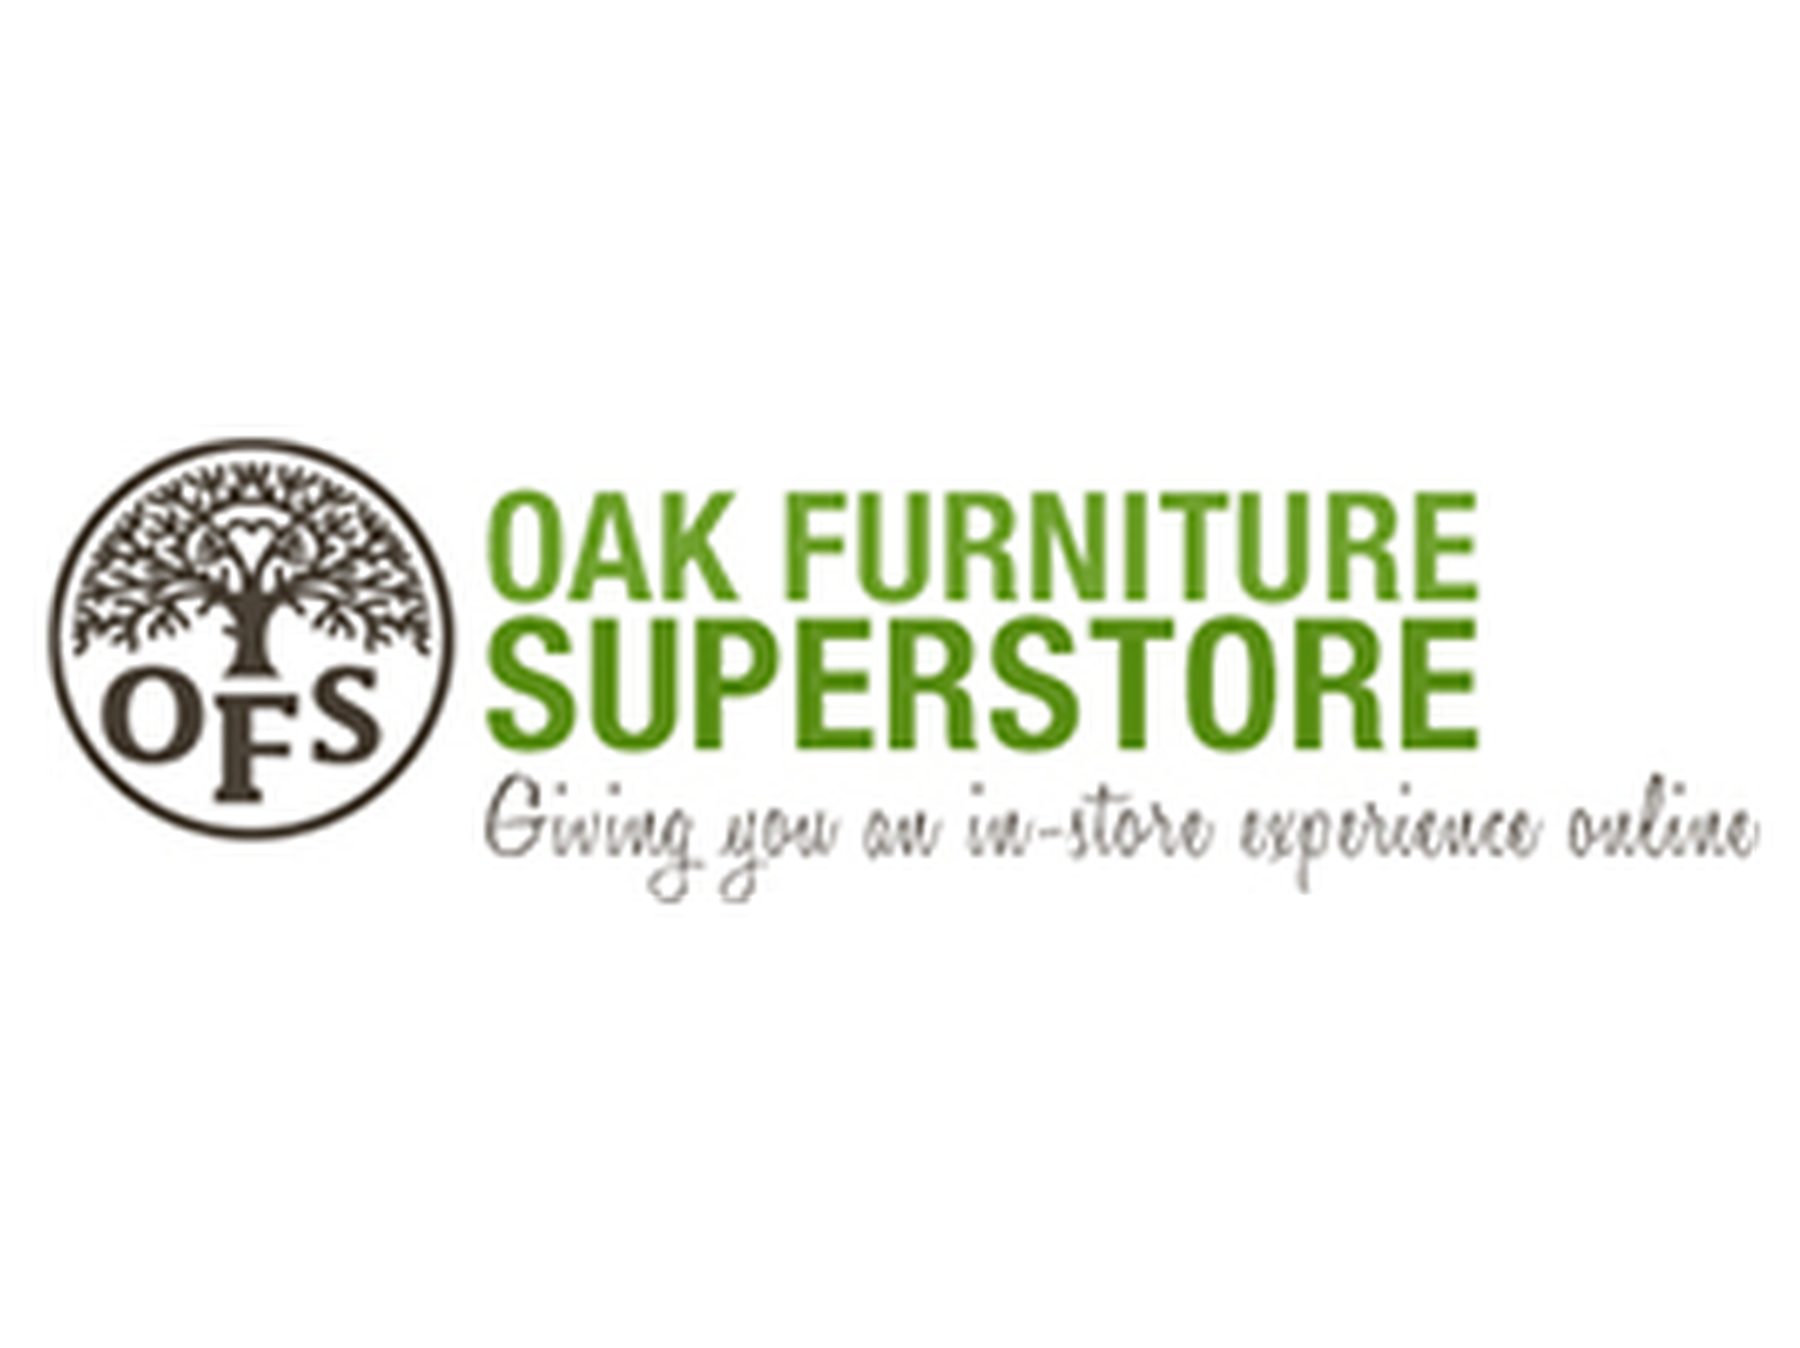 Oak Furniture Superstore discount code